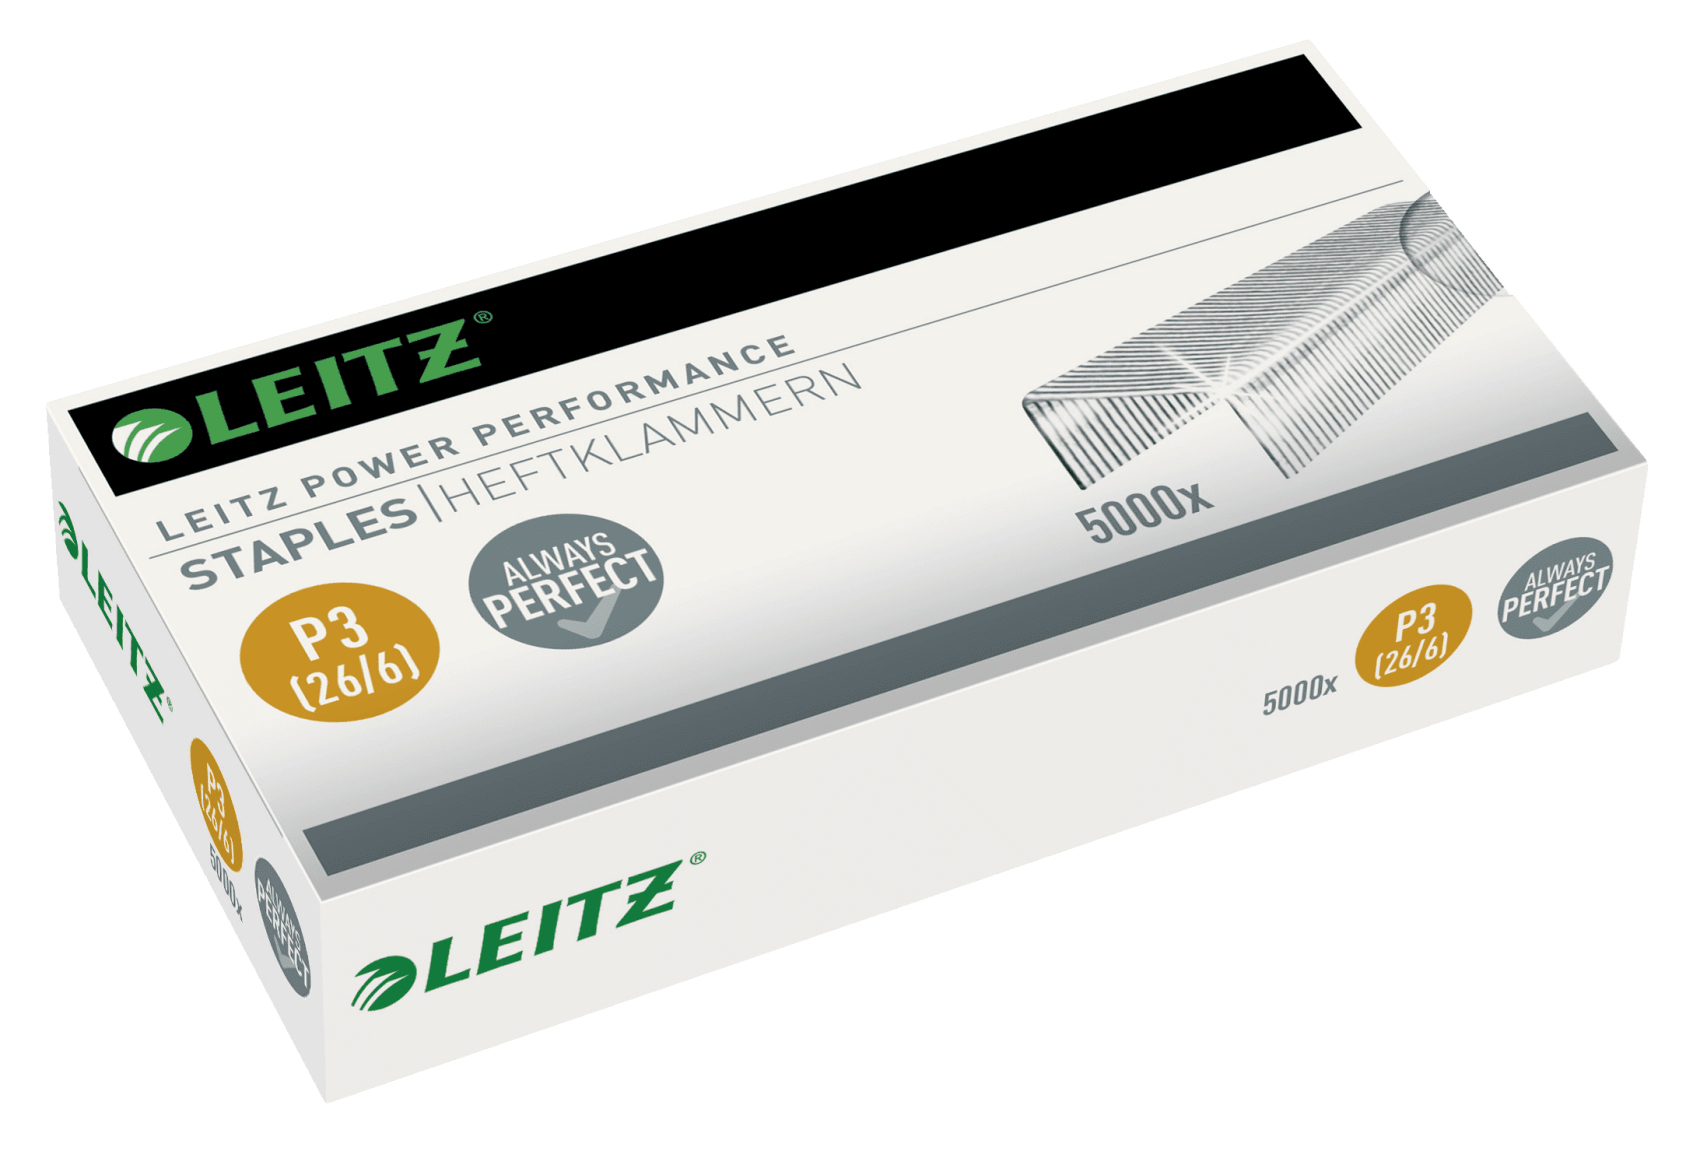 Leitz P3 26/6 Staples (5000 Pack) 55721000